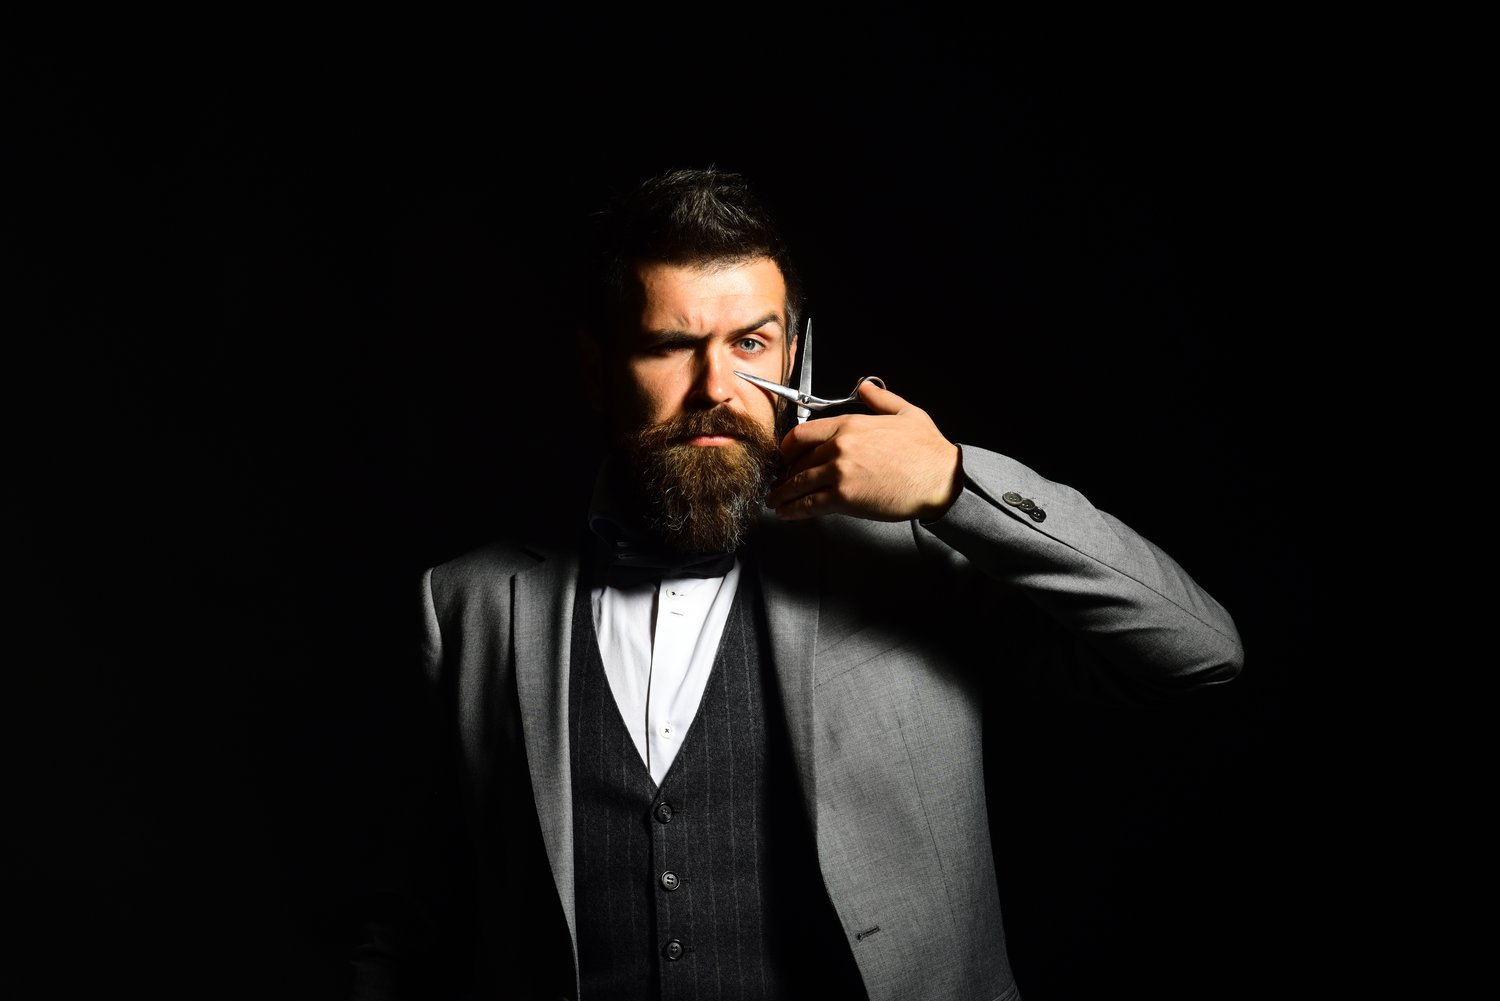 Samodzielne trymowanie brody – od czego zacząć?